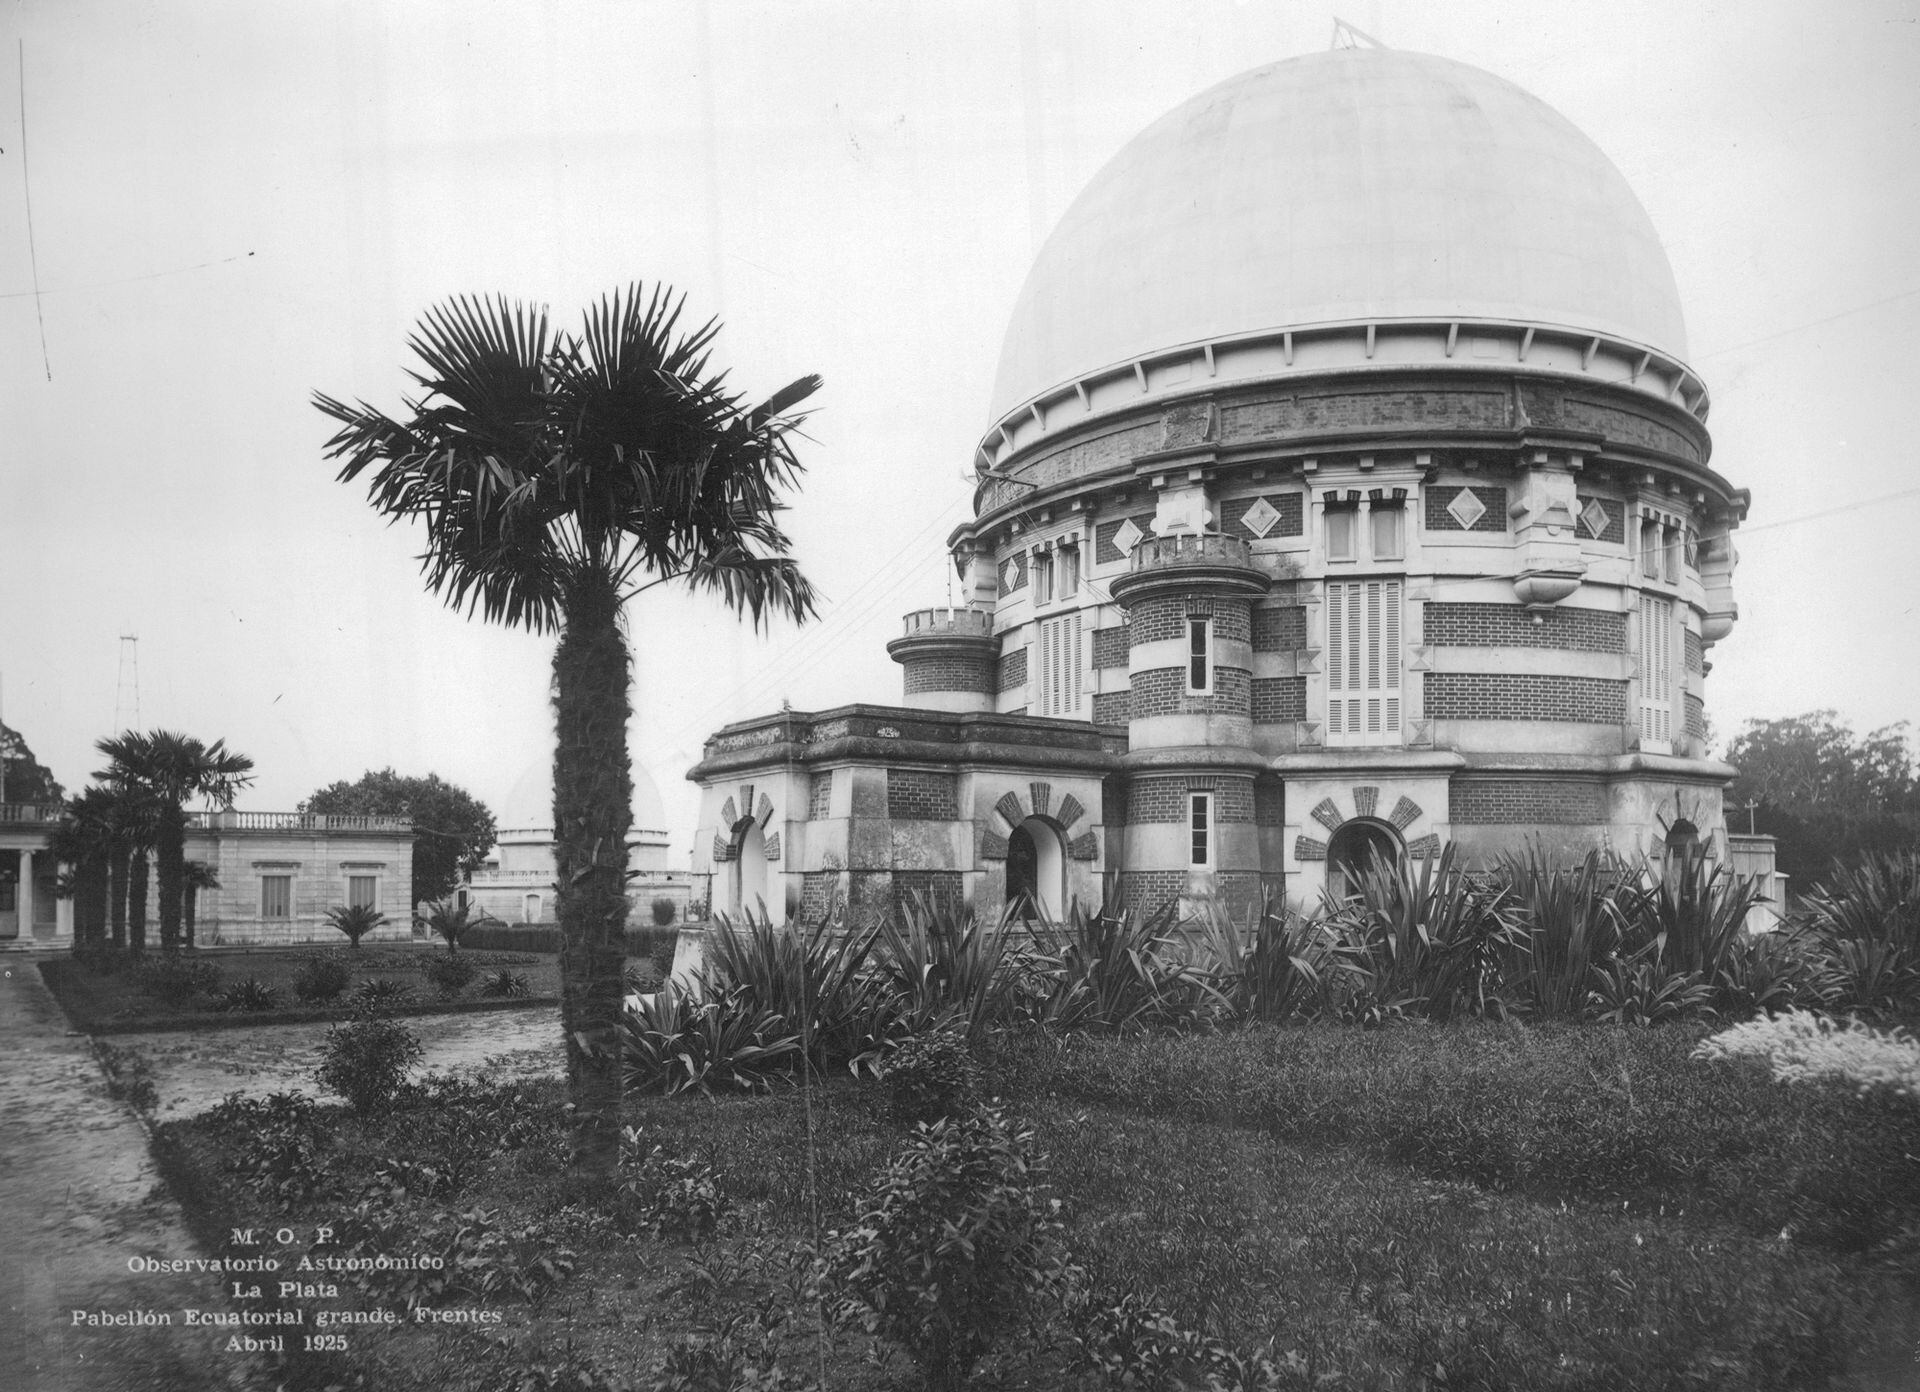 Cúpula del Ecuatorial Grande en el Observatorio Astronómico. 1920.